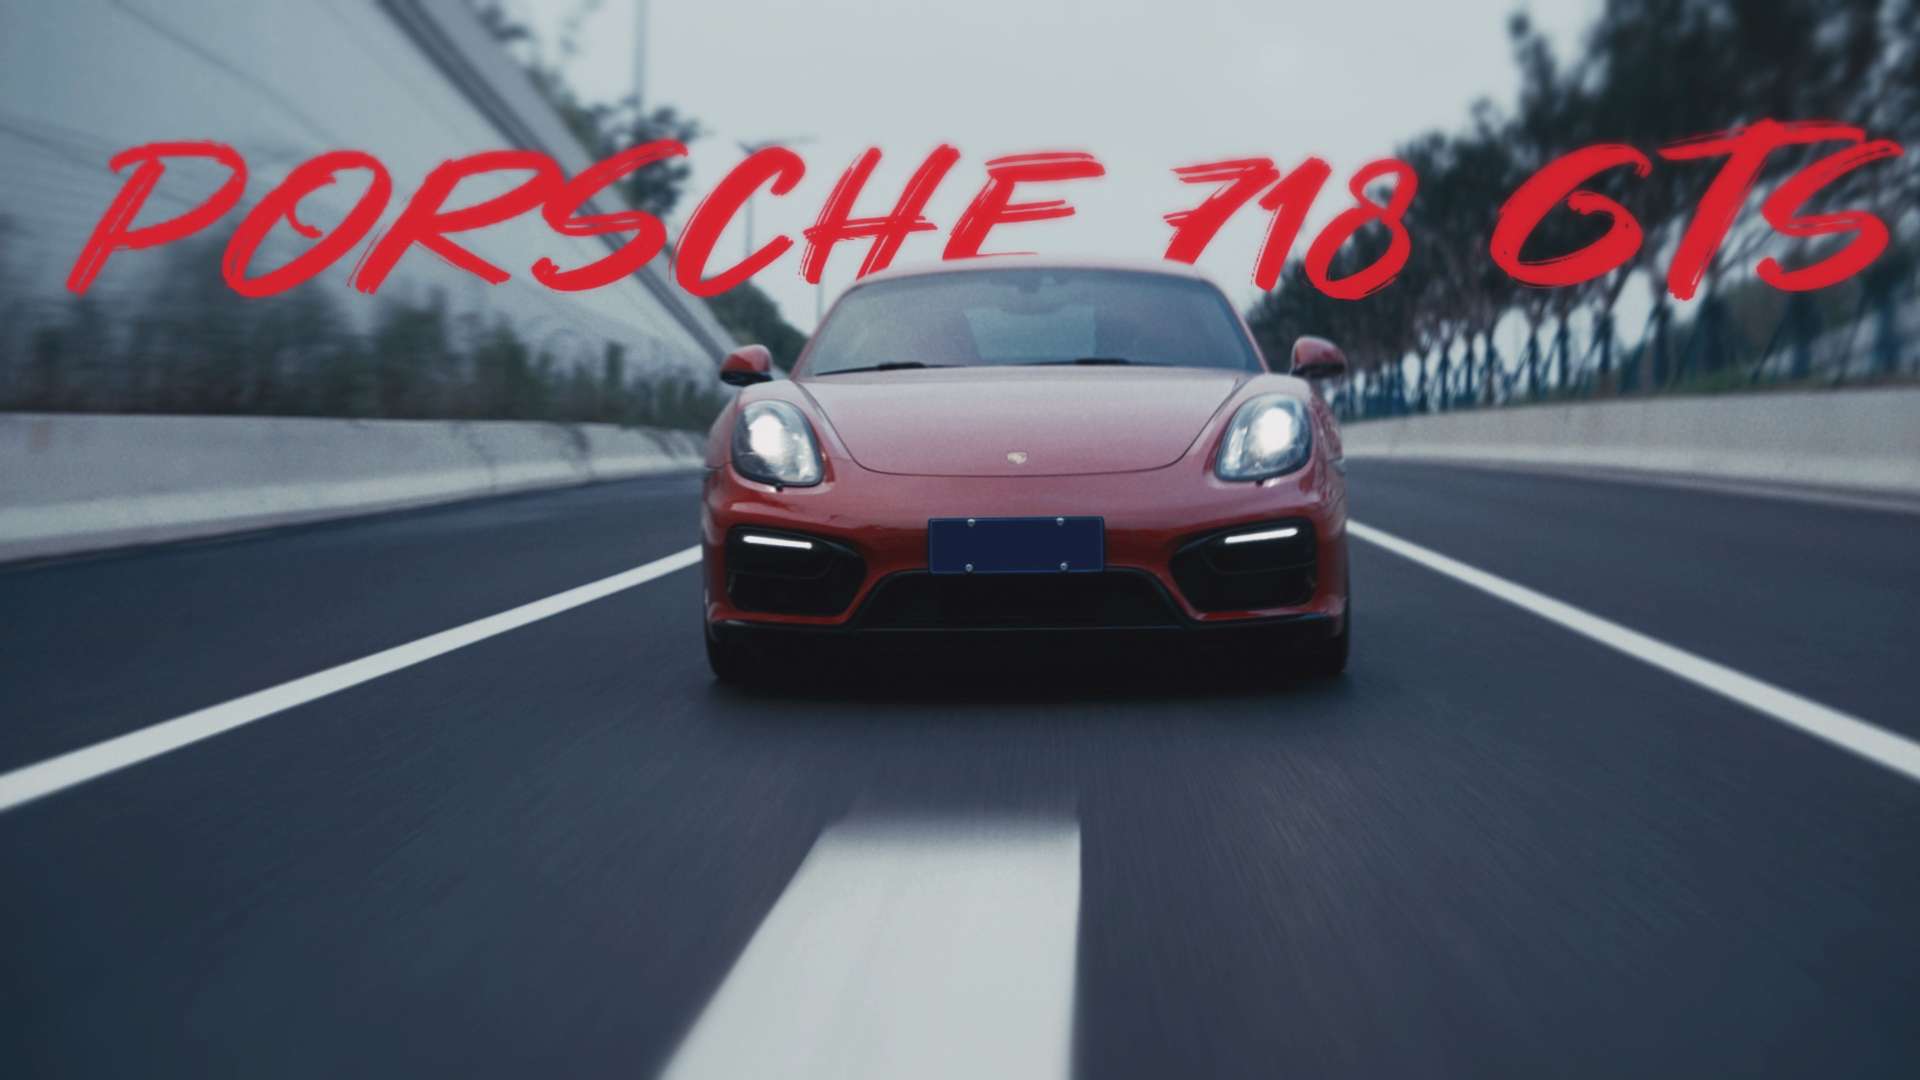 Porsche718 GTS & 即兴舞蹈